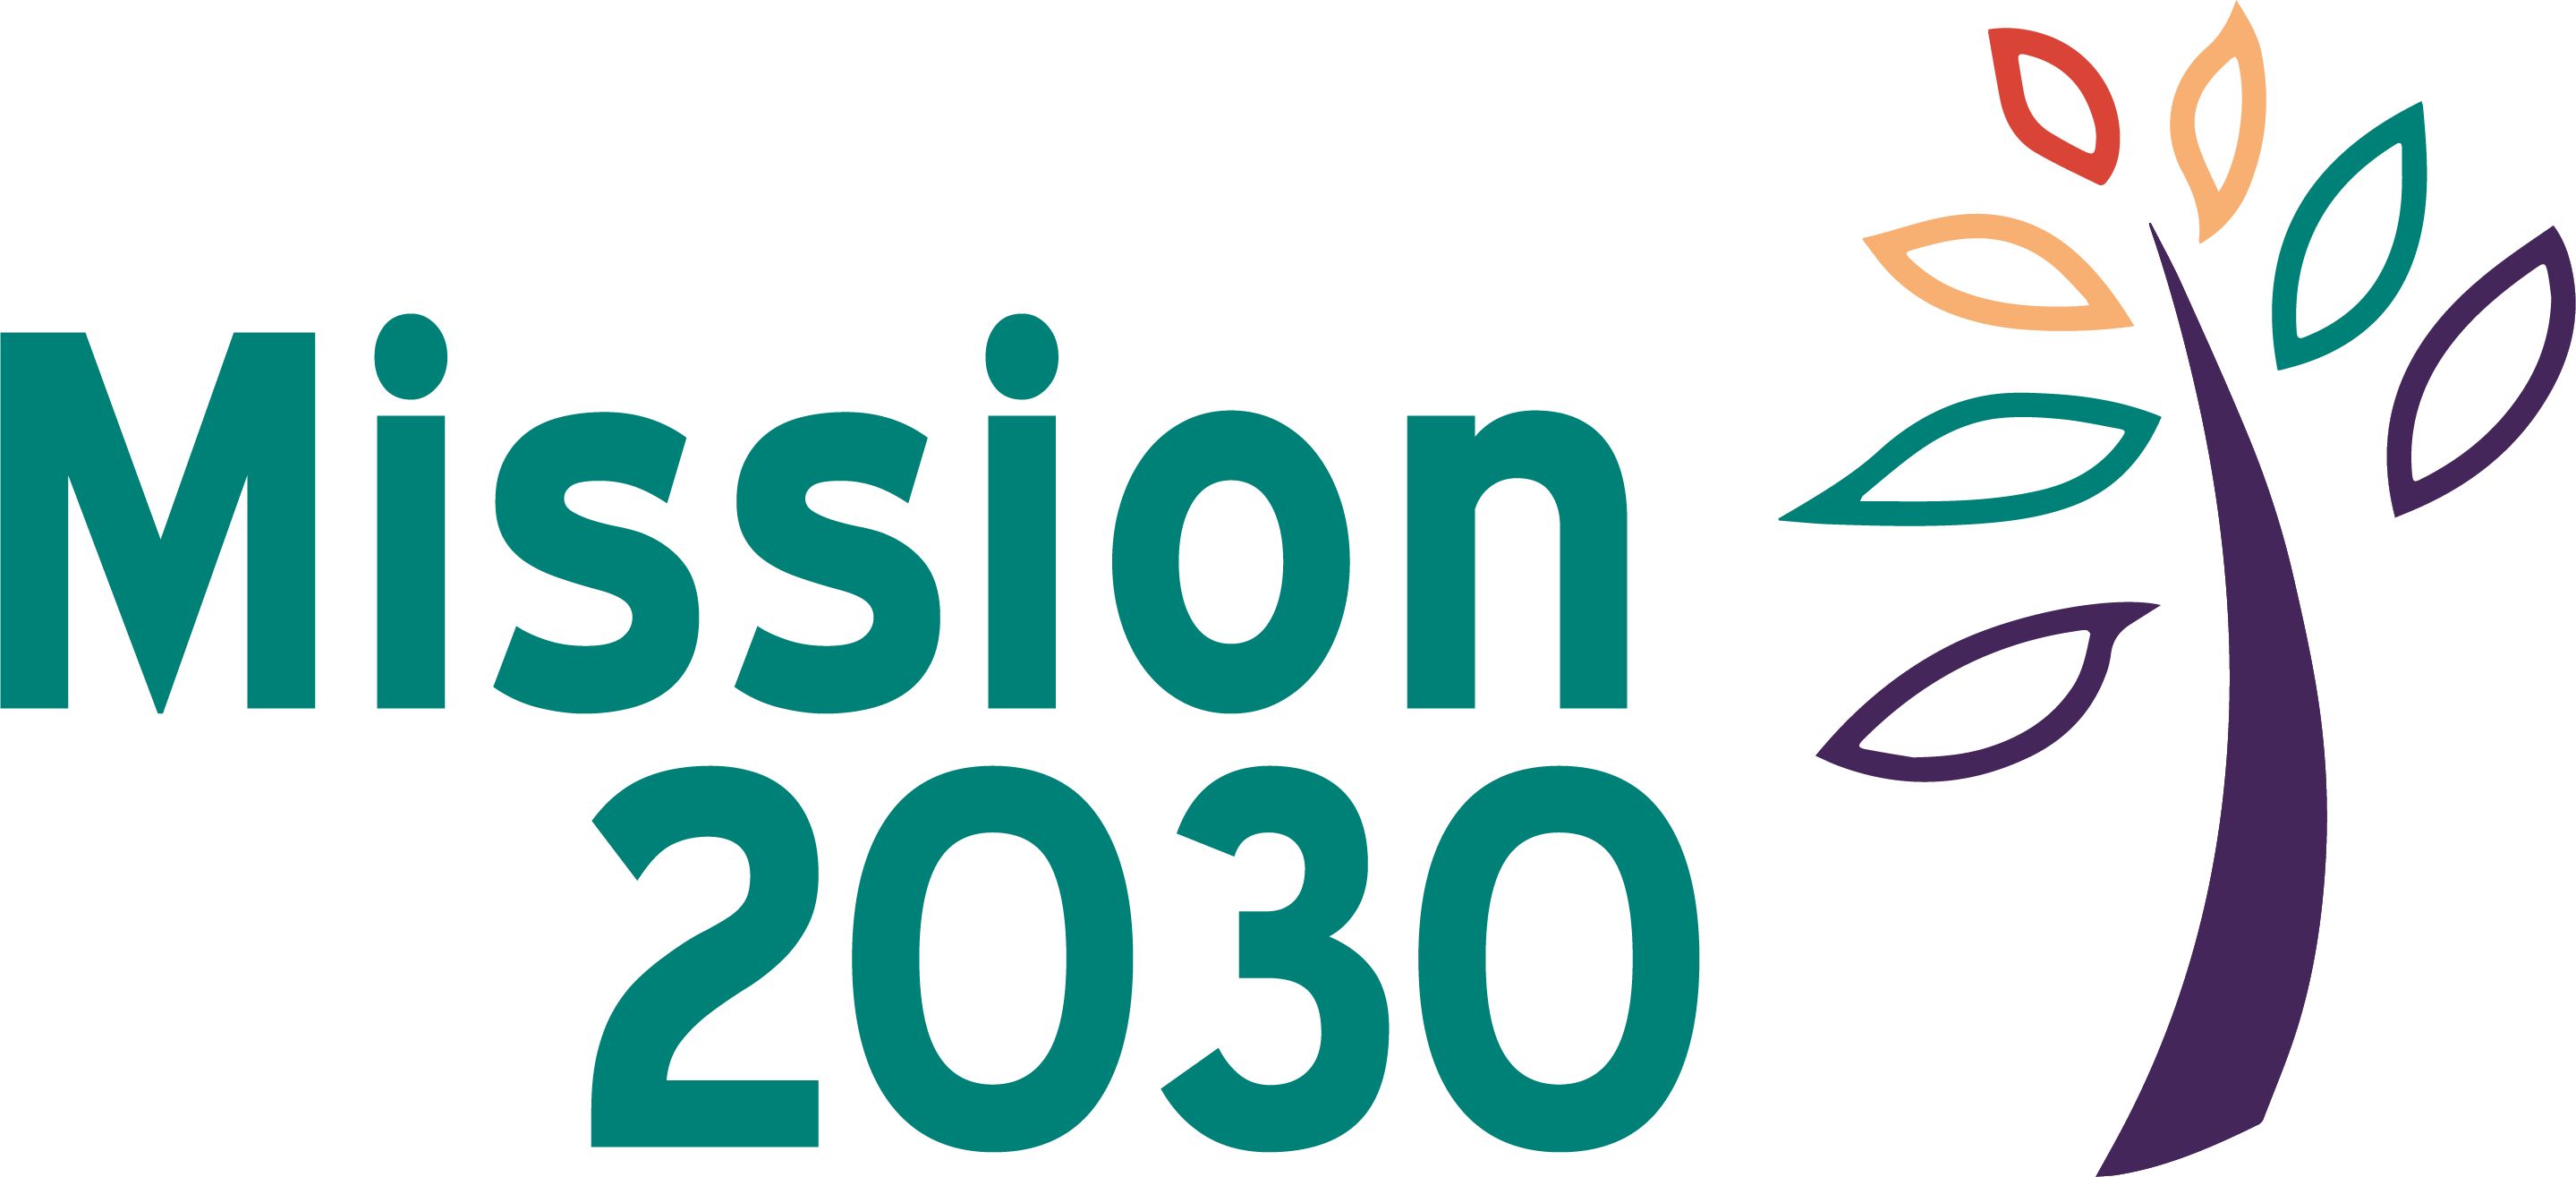 Mission 2030